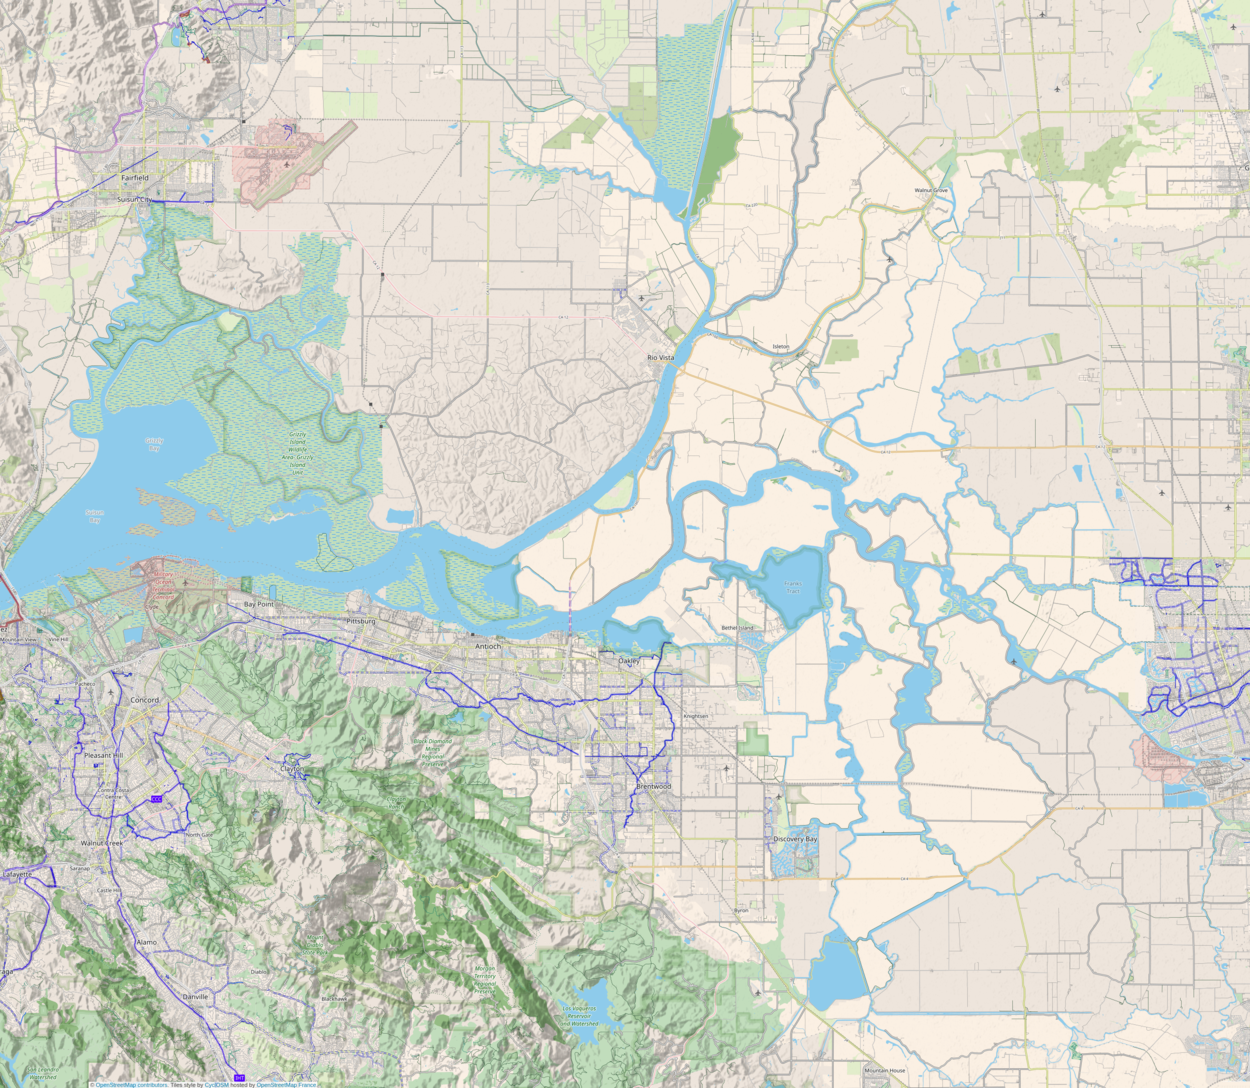 Empire Tract is located in Sacramento-San Joaquin River Delta